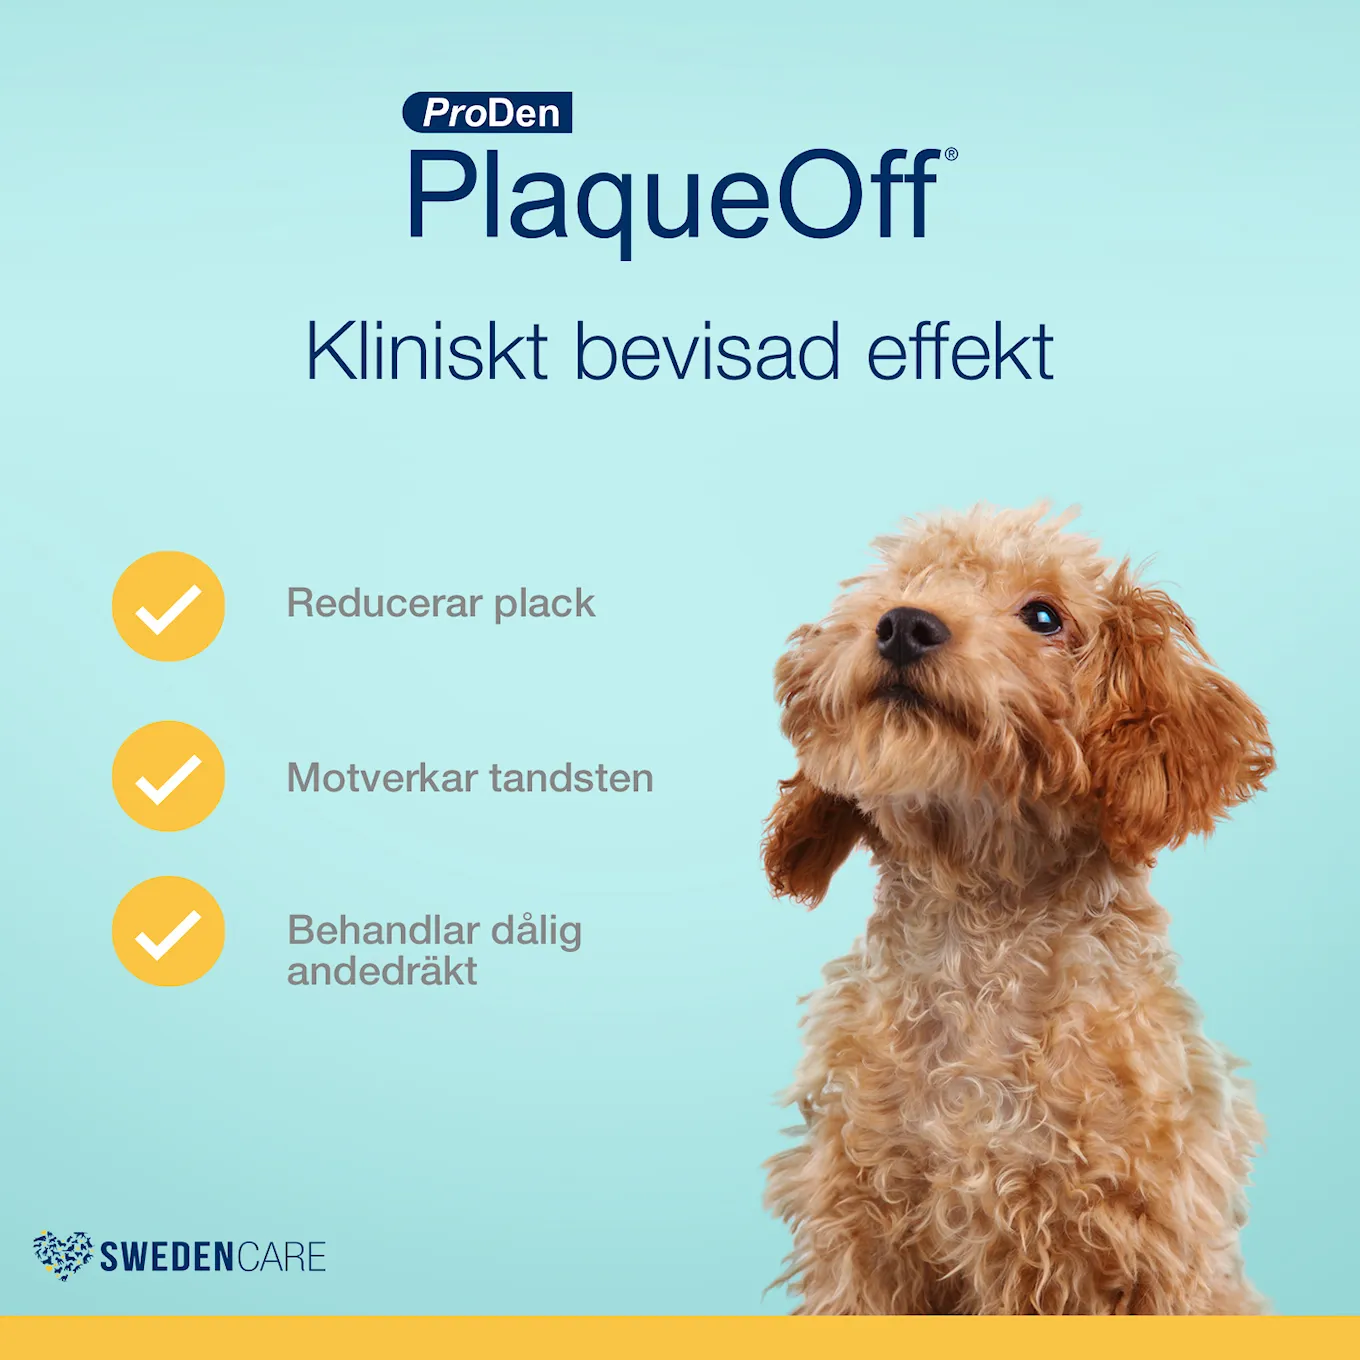 Swedencare_ProDen_PlaqueOff_kliniskt_bevisad_effek